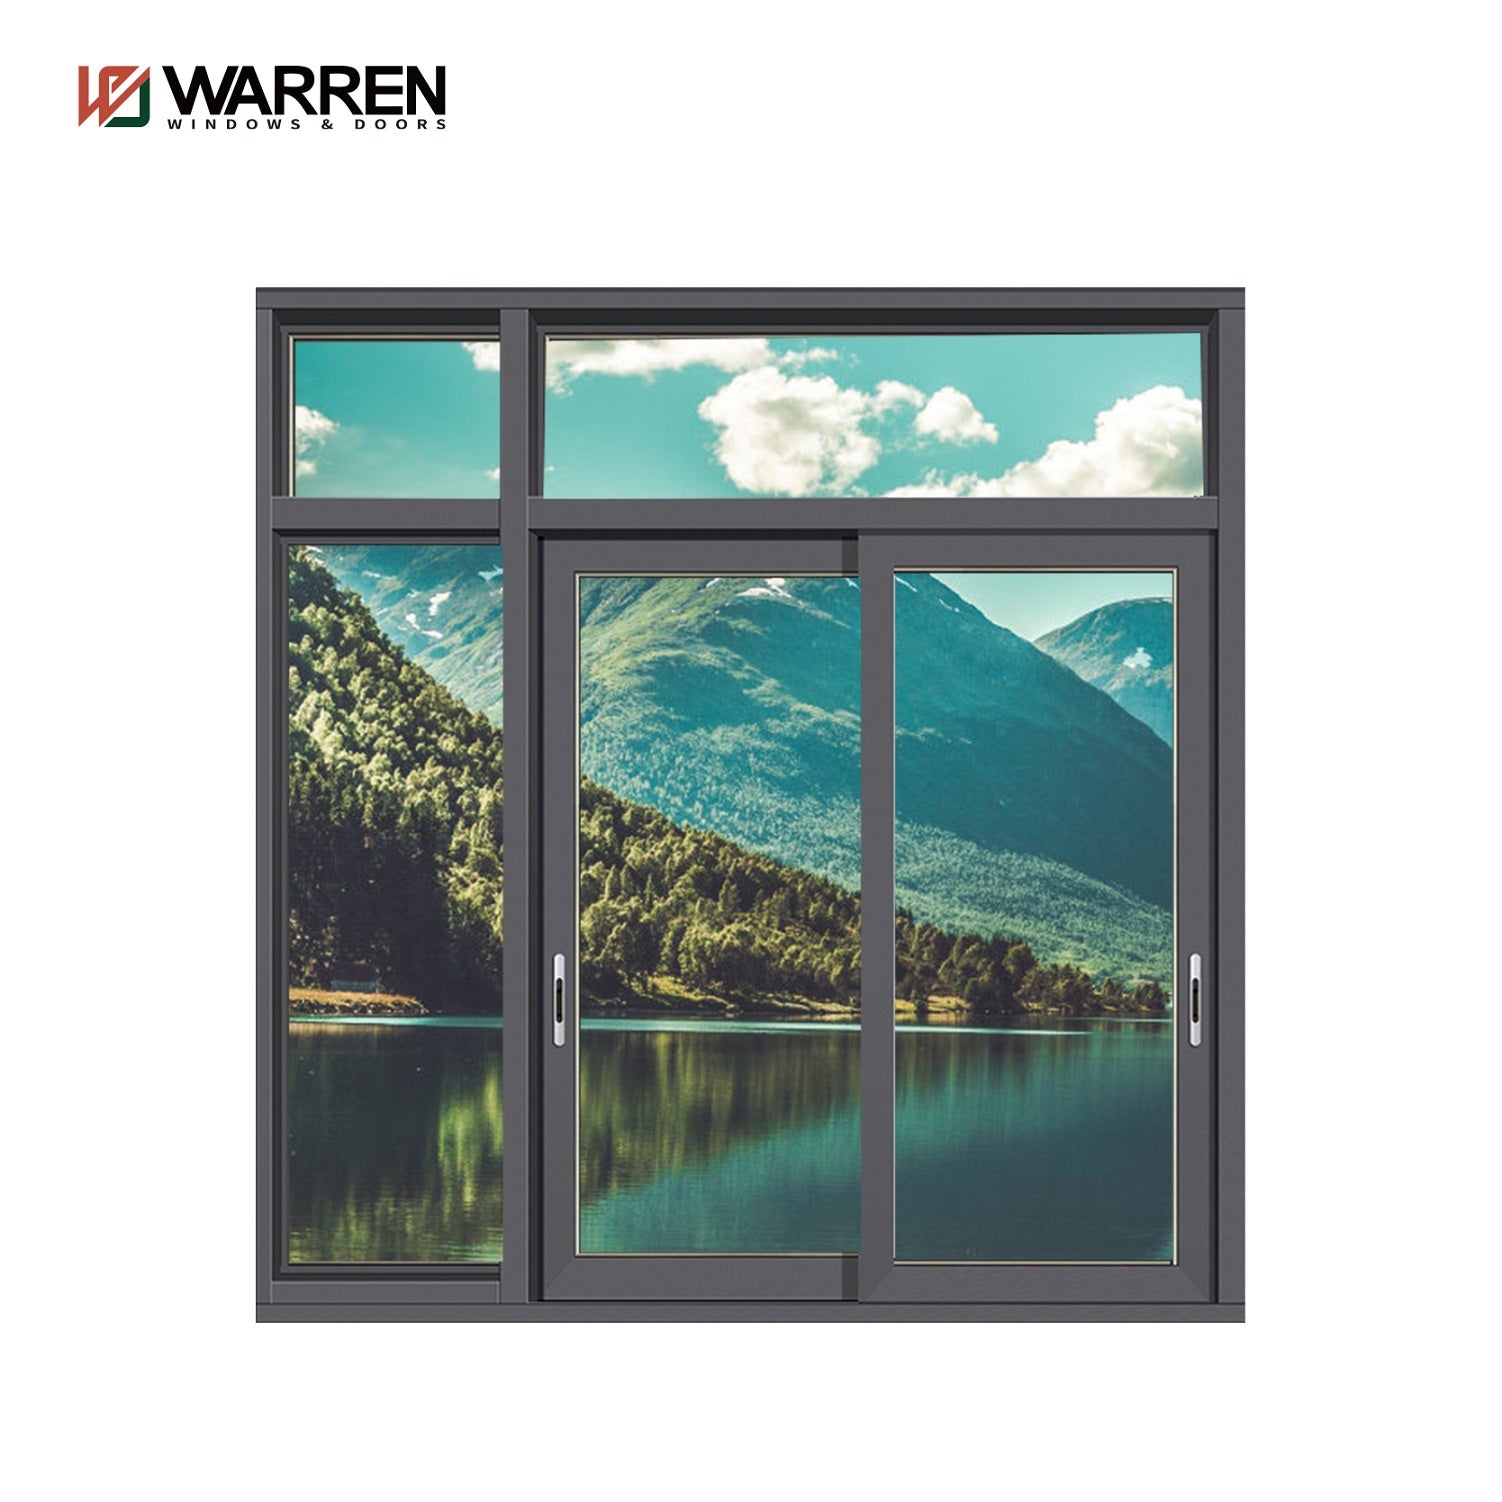 Window Grill Design – Warren Windows and Doors